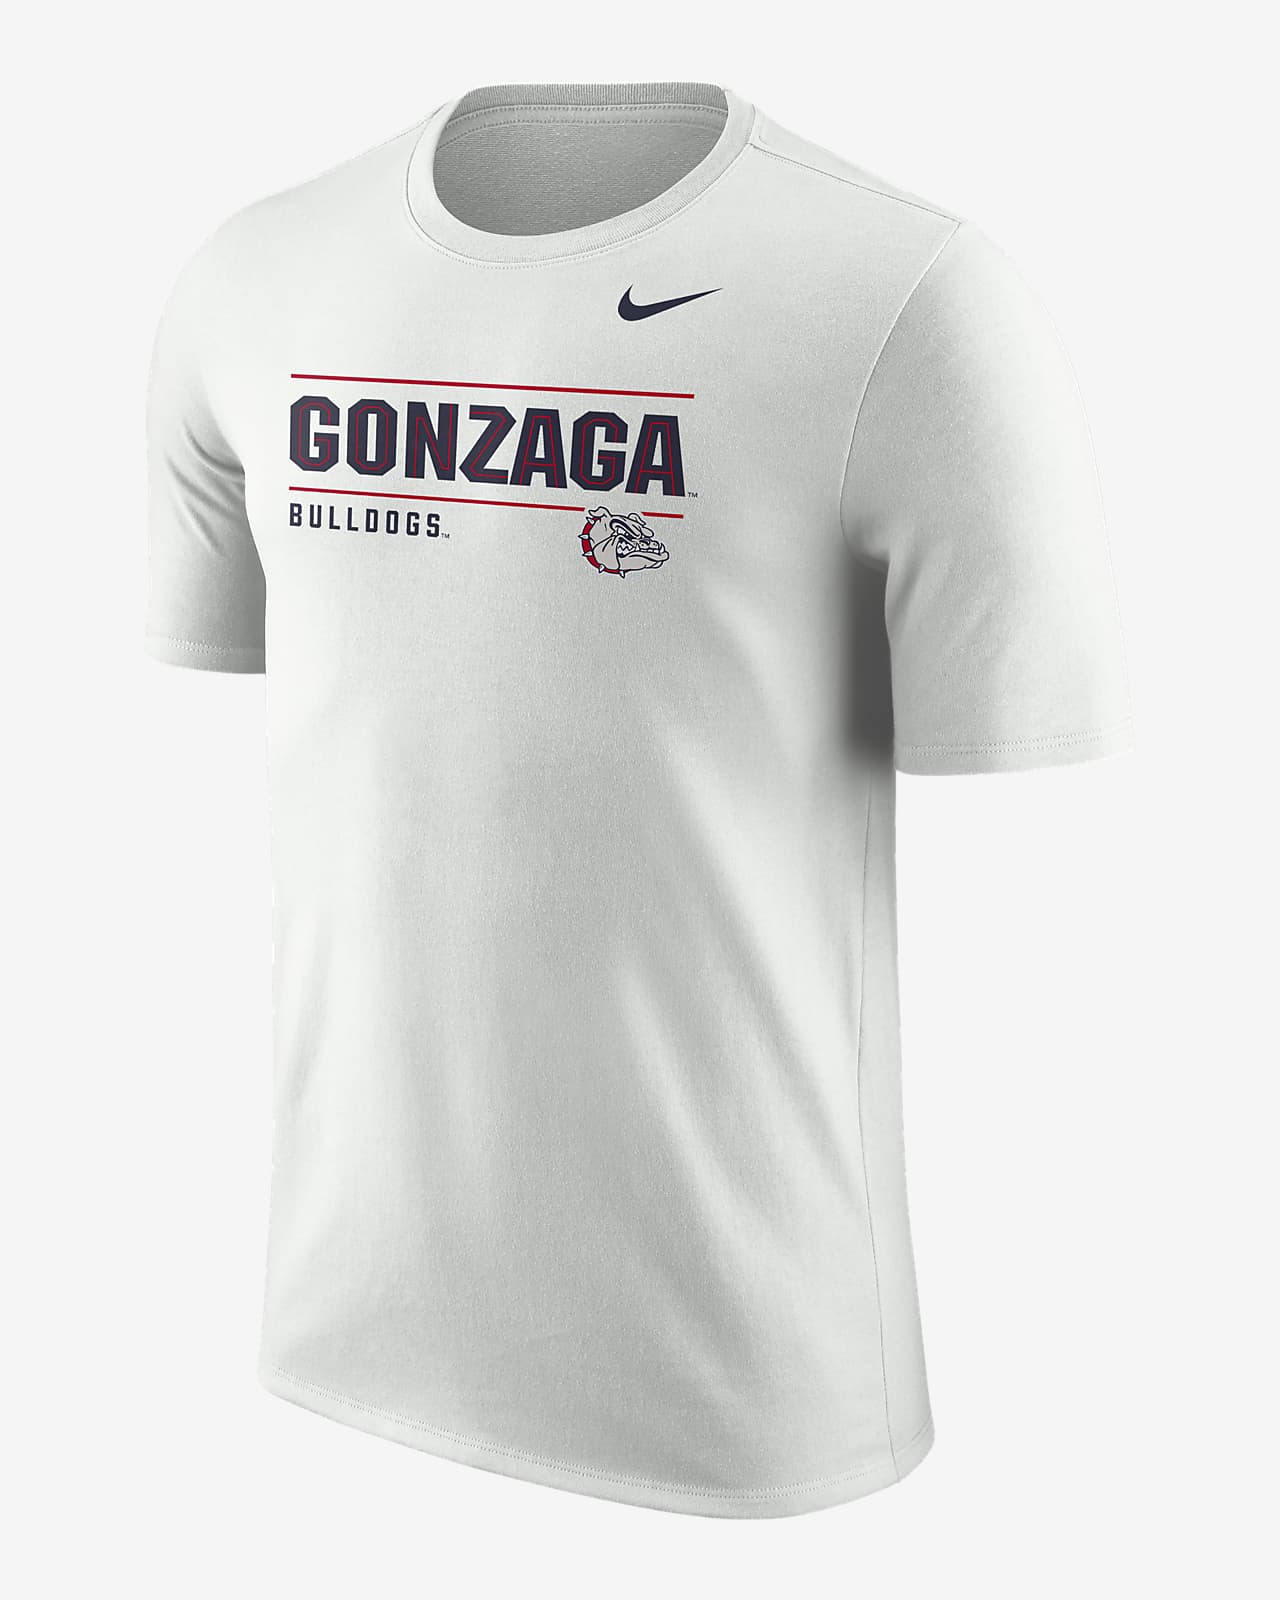 Gonzaga Bulldogs soccer stars jersey